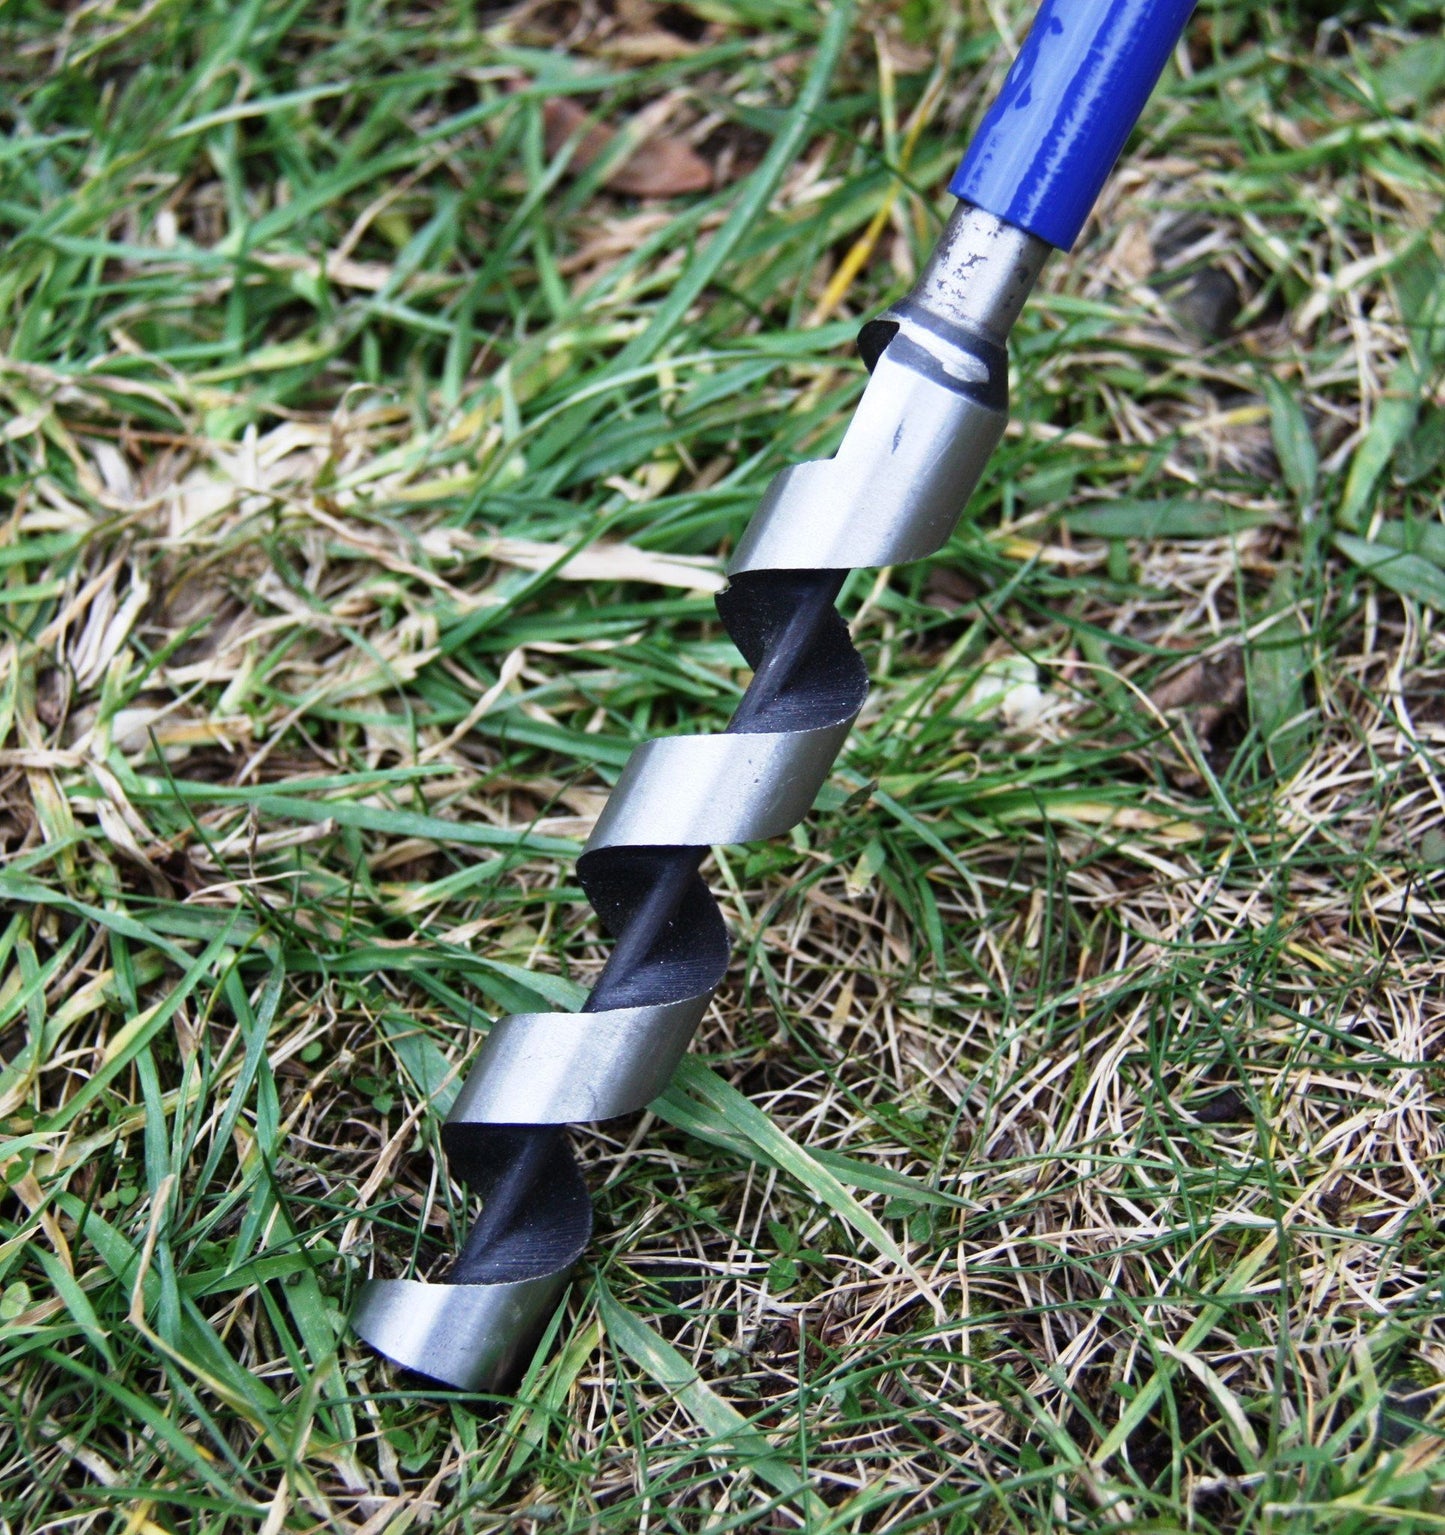 Fieldwork Equipment - Auger: Hand-held Soil Sampling Auger